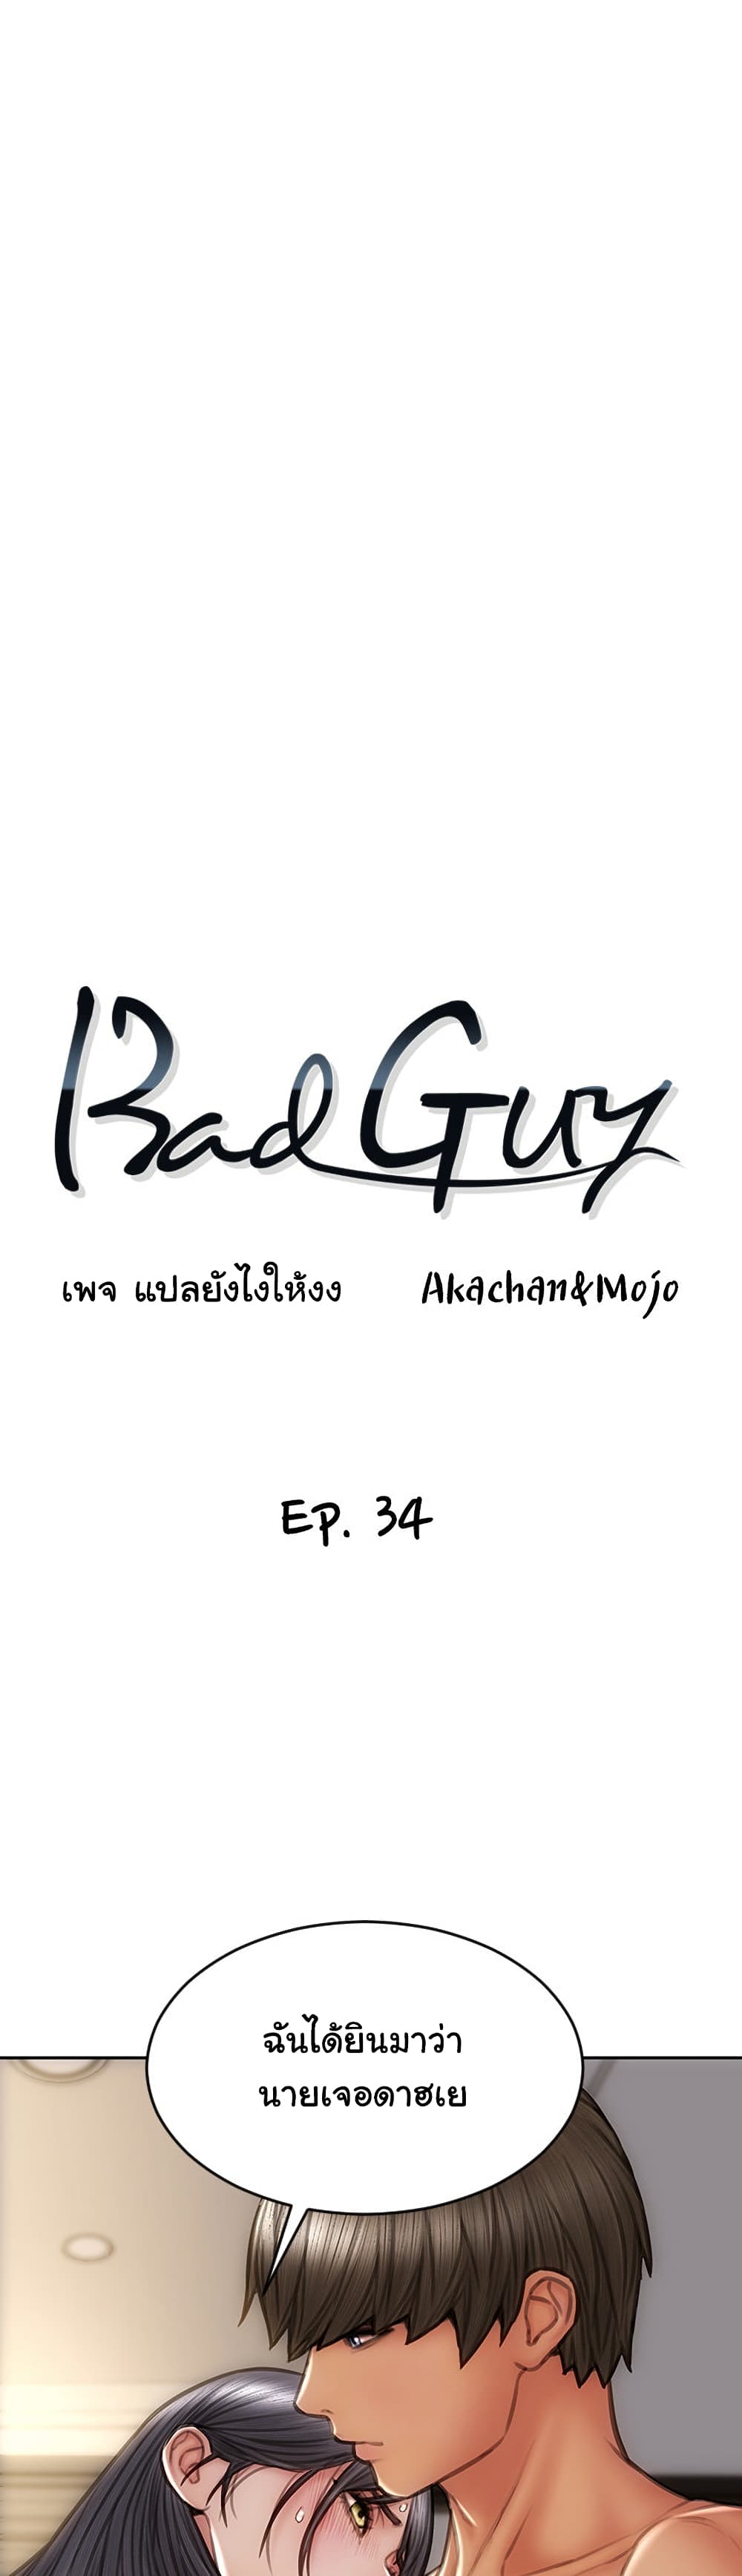 Bad Guy Revenge 34 (5)